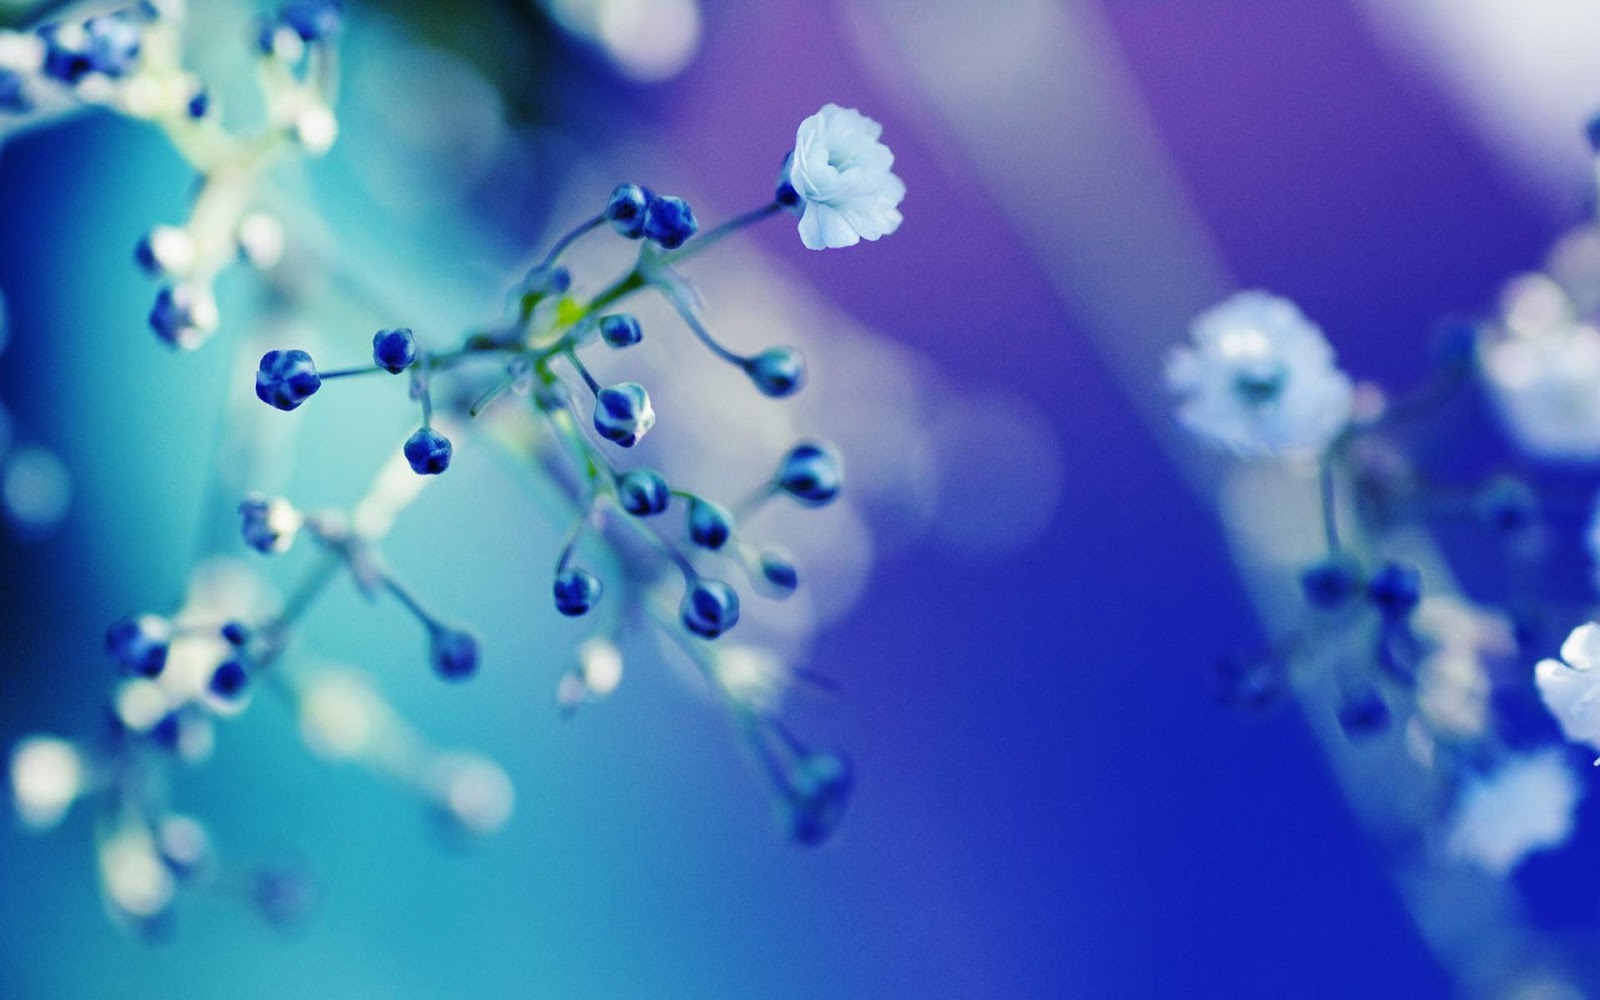 http://1.bp.blogspot.com/-7868o-T99_8/UN9MfQyX2wI/AAAAAAAACBY/Ps_ieunMhtM/s1600/Blue+Flower+Close-up+Wallpaper+HD.jpg